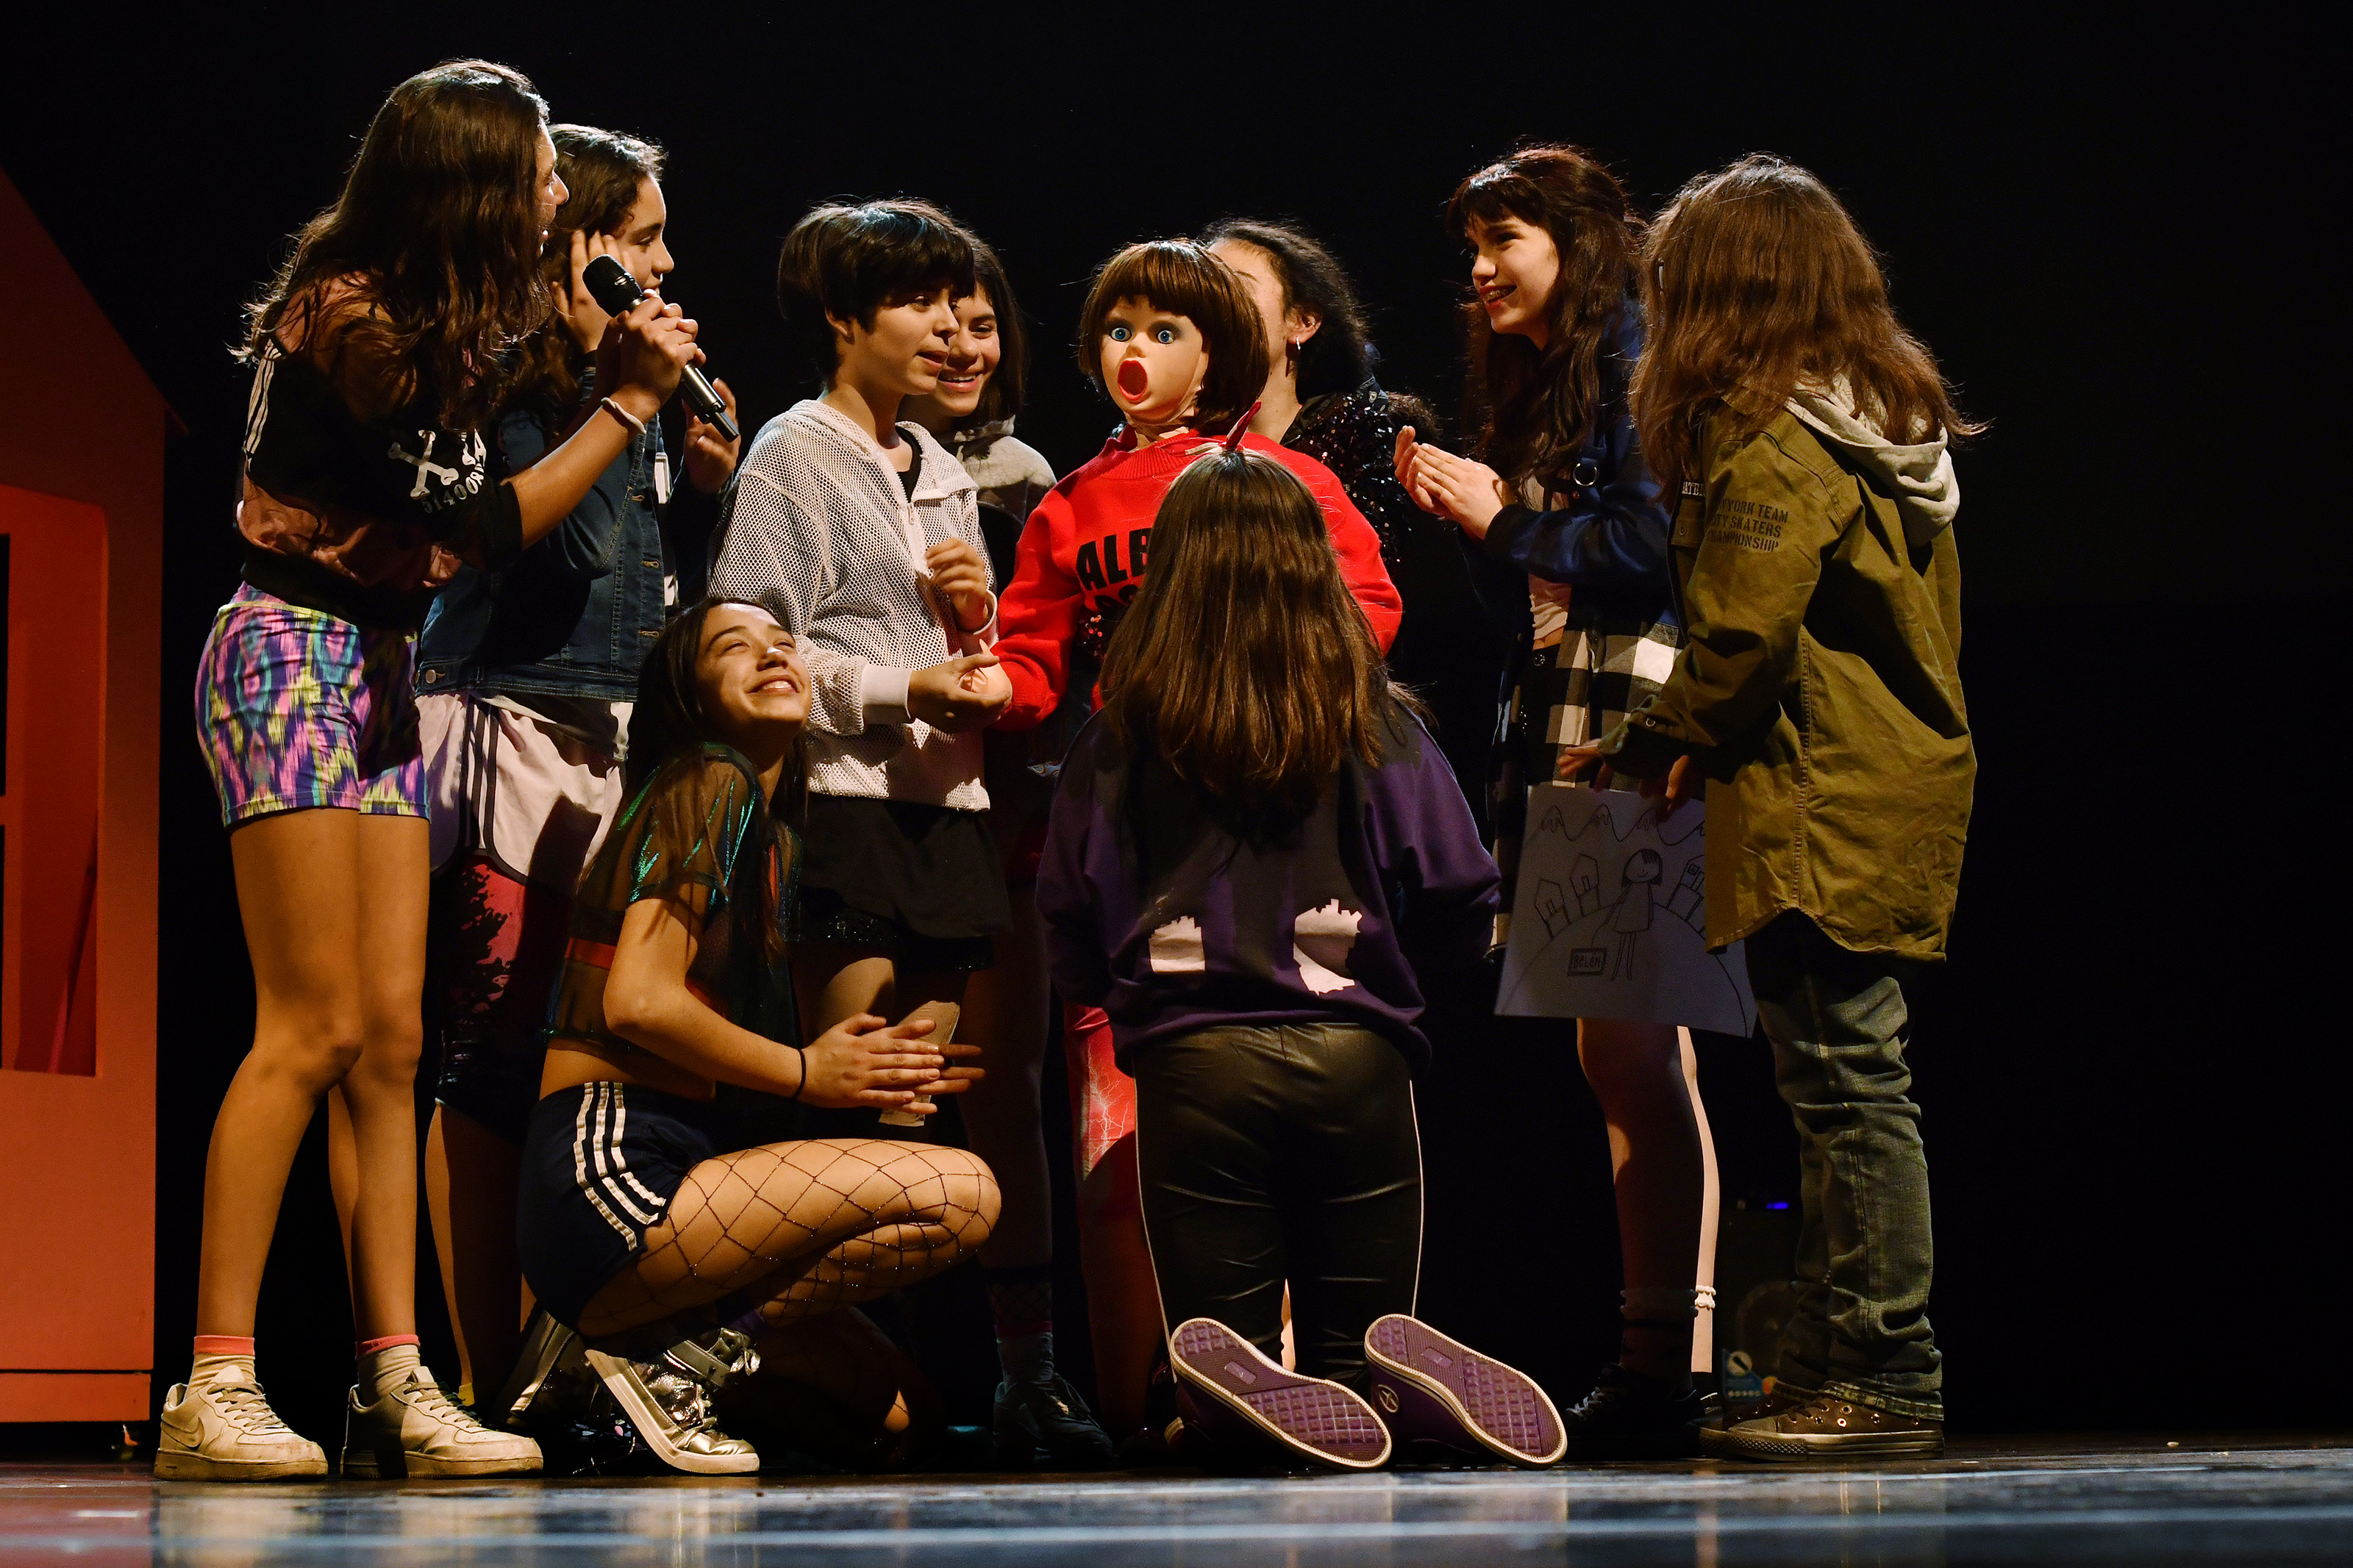 "Los adolescentes son la verdadera contracultura" en Madrid